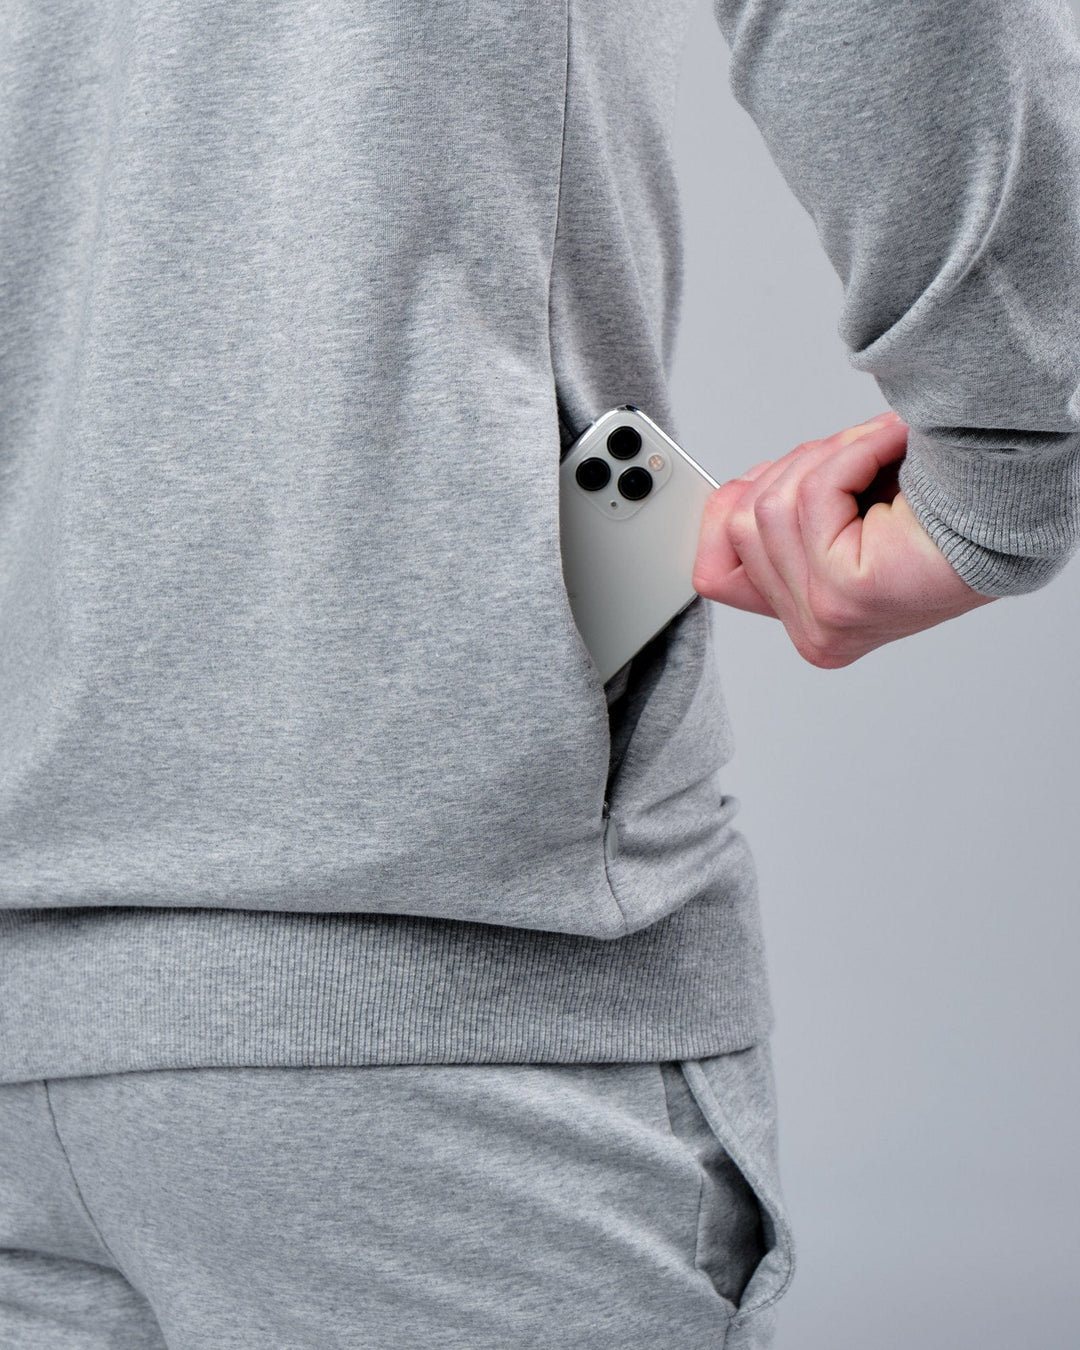 Unisex Rival FLXFleece Training Fit Sweater - Lt Grey Marl